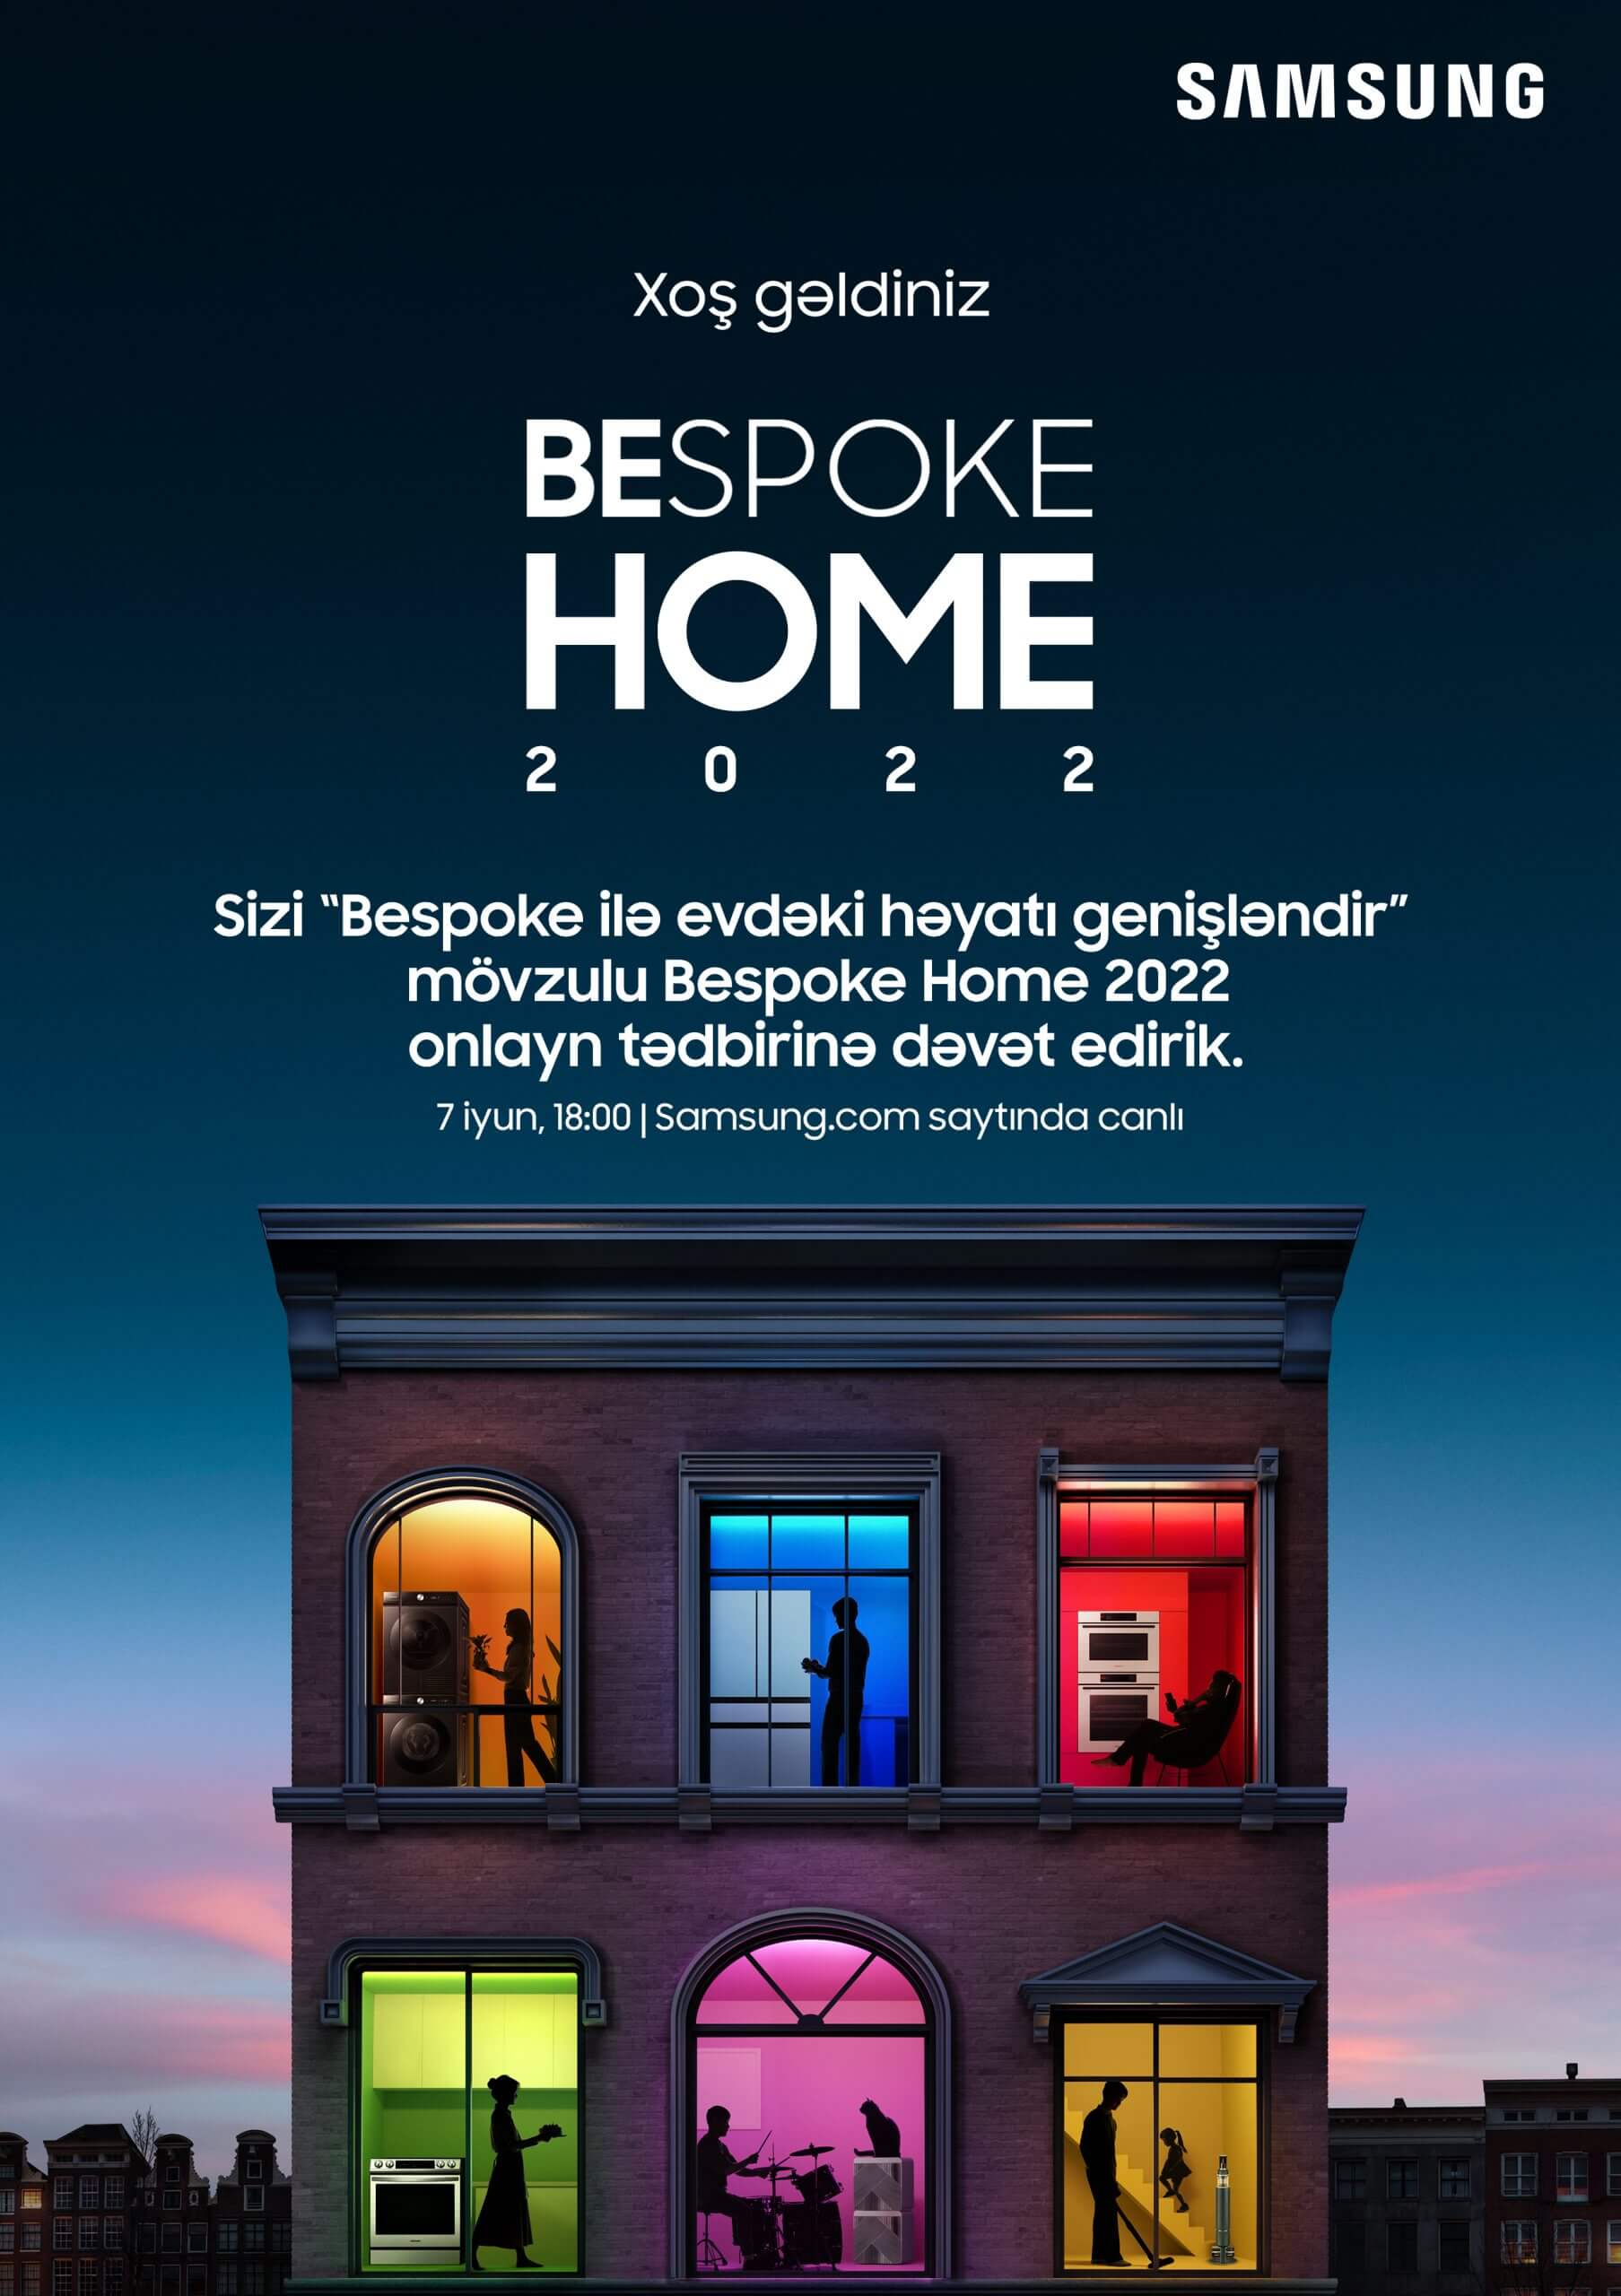 “Samsung Electronics” sizi “Bespoke Home 2022” tədbirinə yaşam imkanlarınızı genişləndirməyə dəvət edir